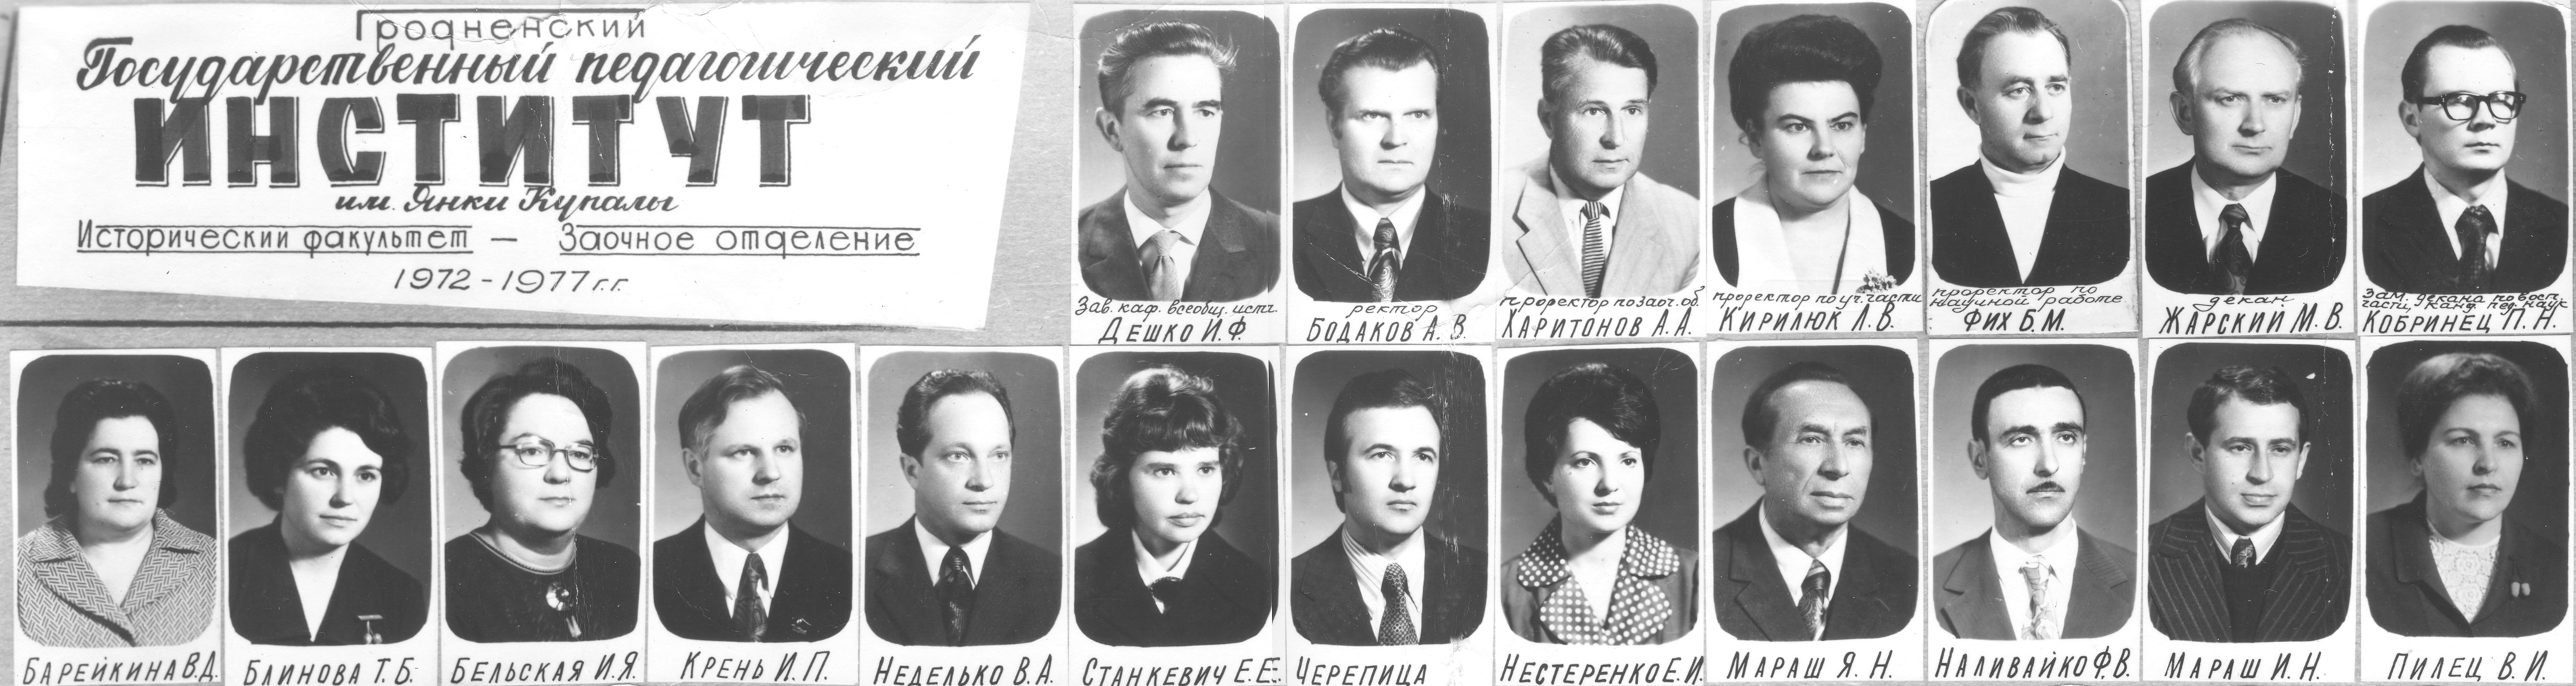 1972 1977 гг. Преподаватели исторического факультета